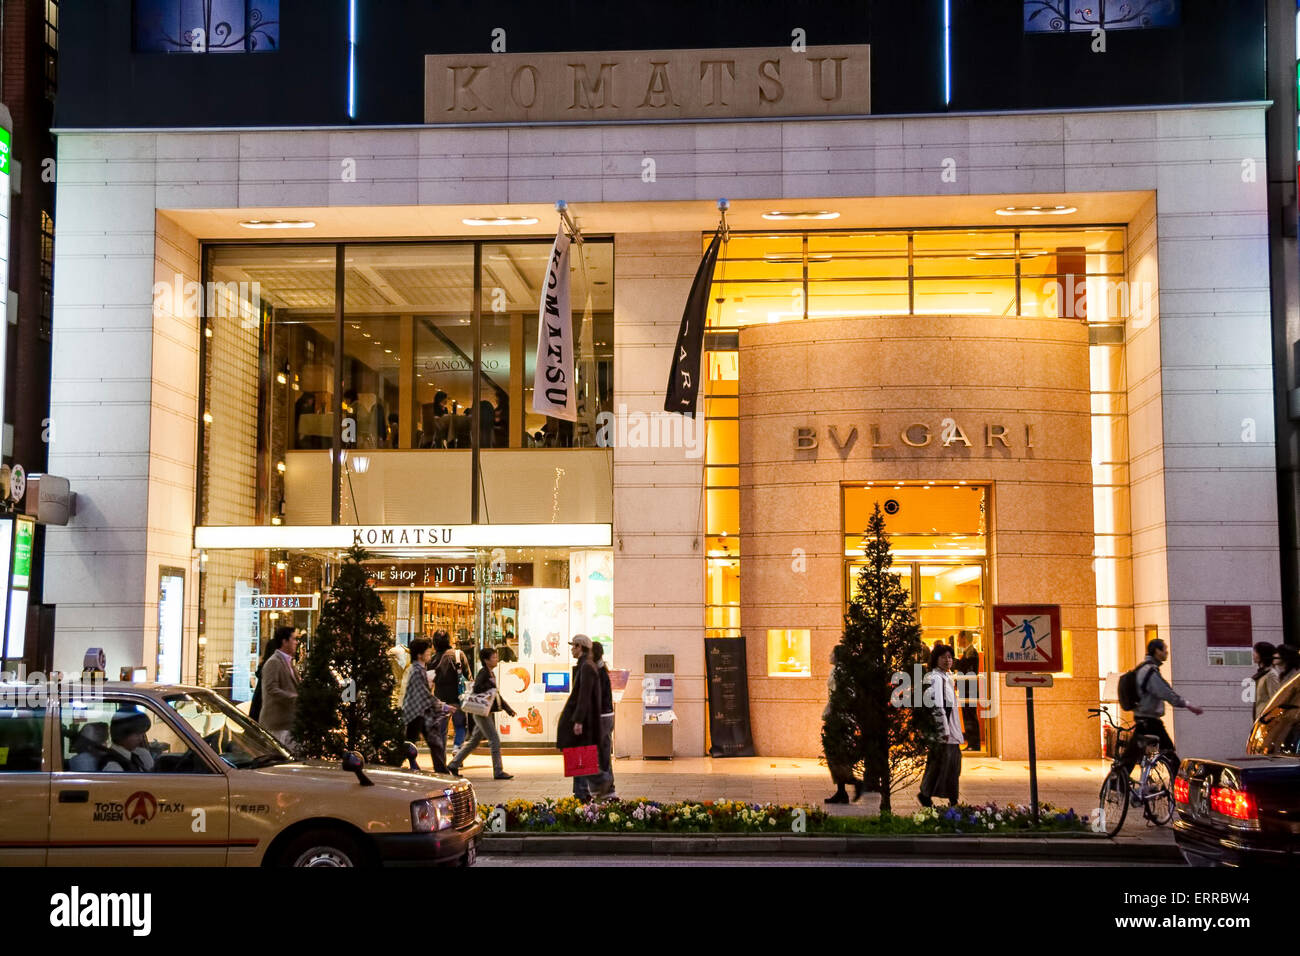 Vue de l'autre côté de la rue de l'entrée du magasin phare Bvlgari avec le magasin Komatsu à côté dans le même bâtiment la nuit à Ginza, Tokyo. Banque D'Images